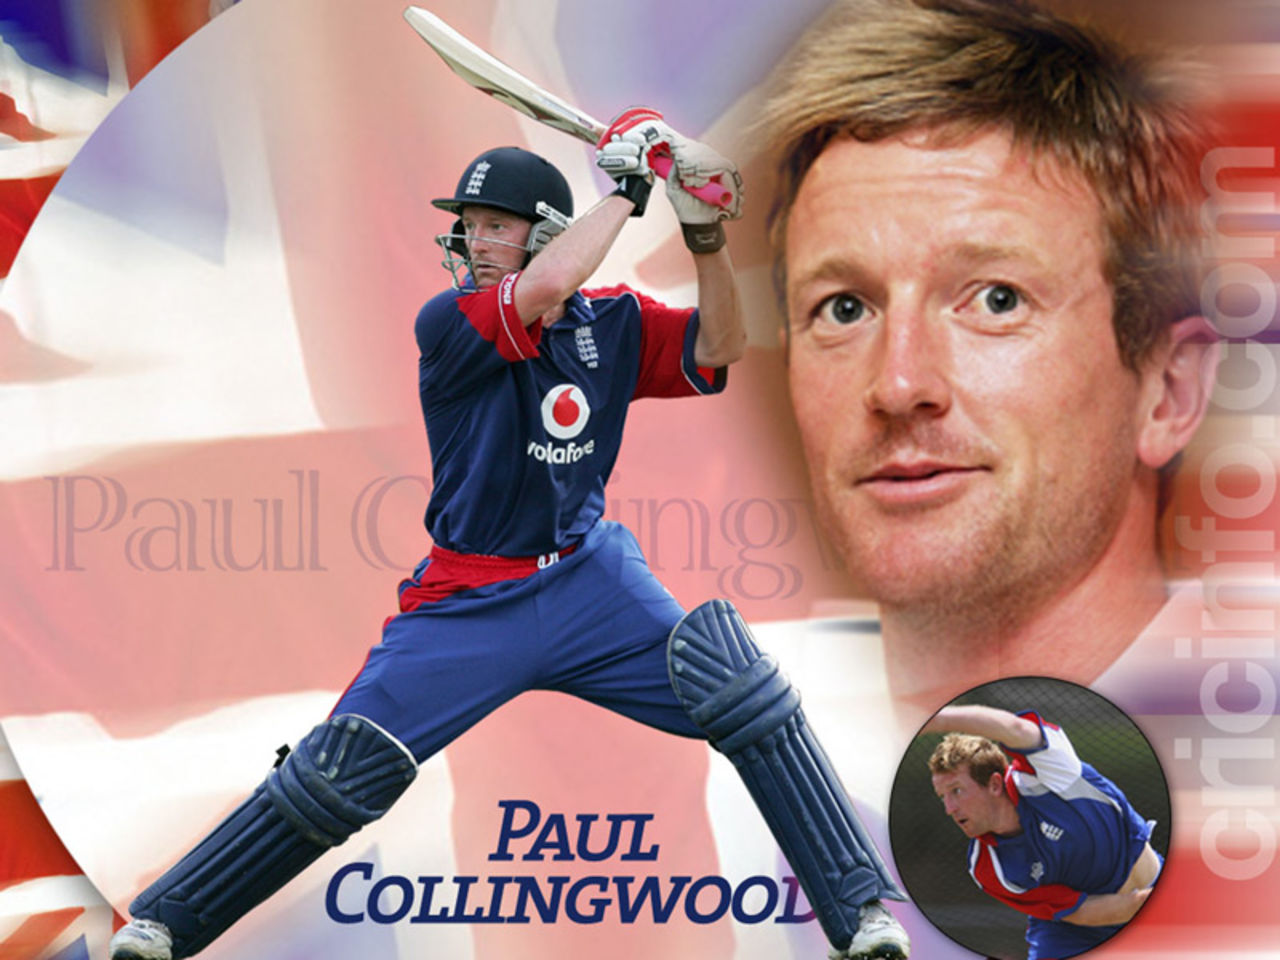 Paul Collingwood
